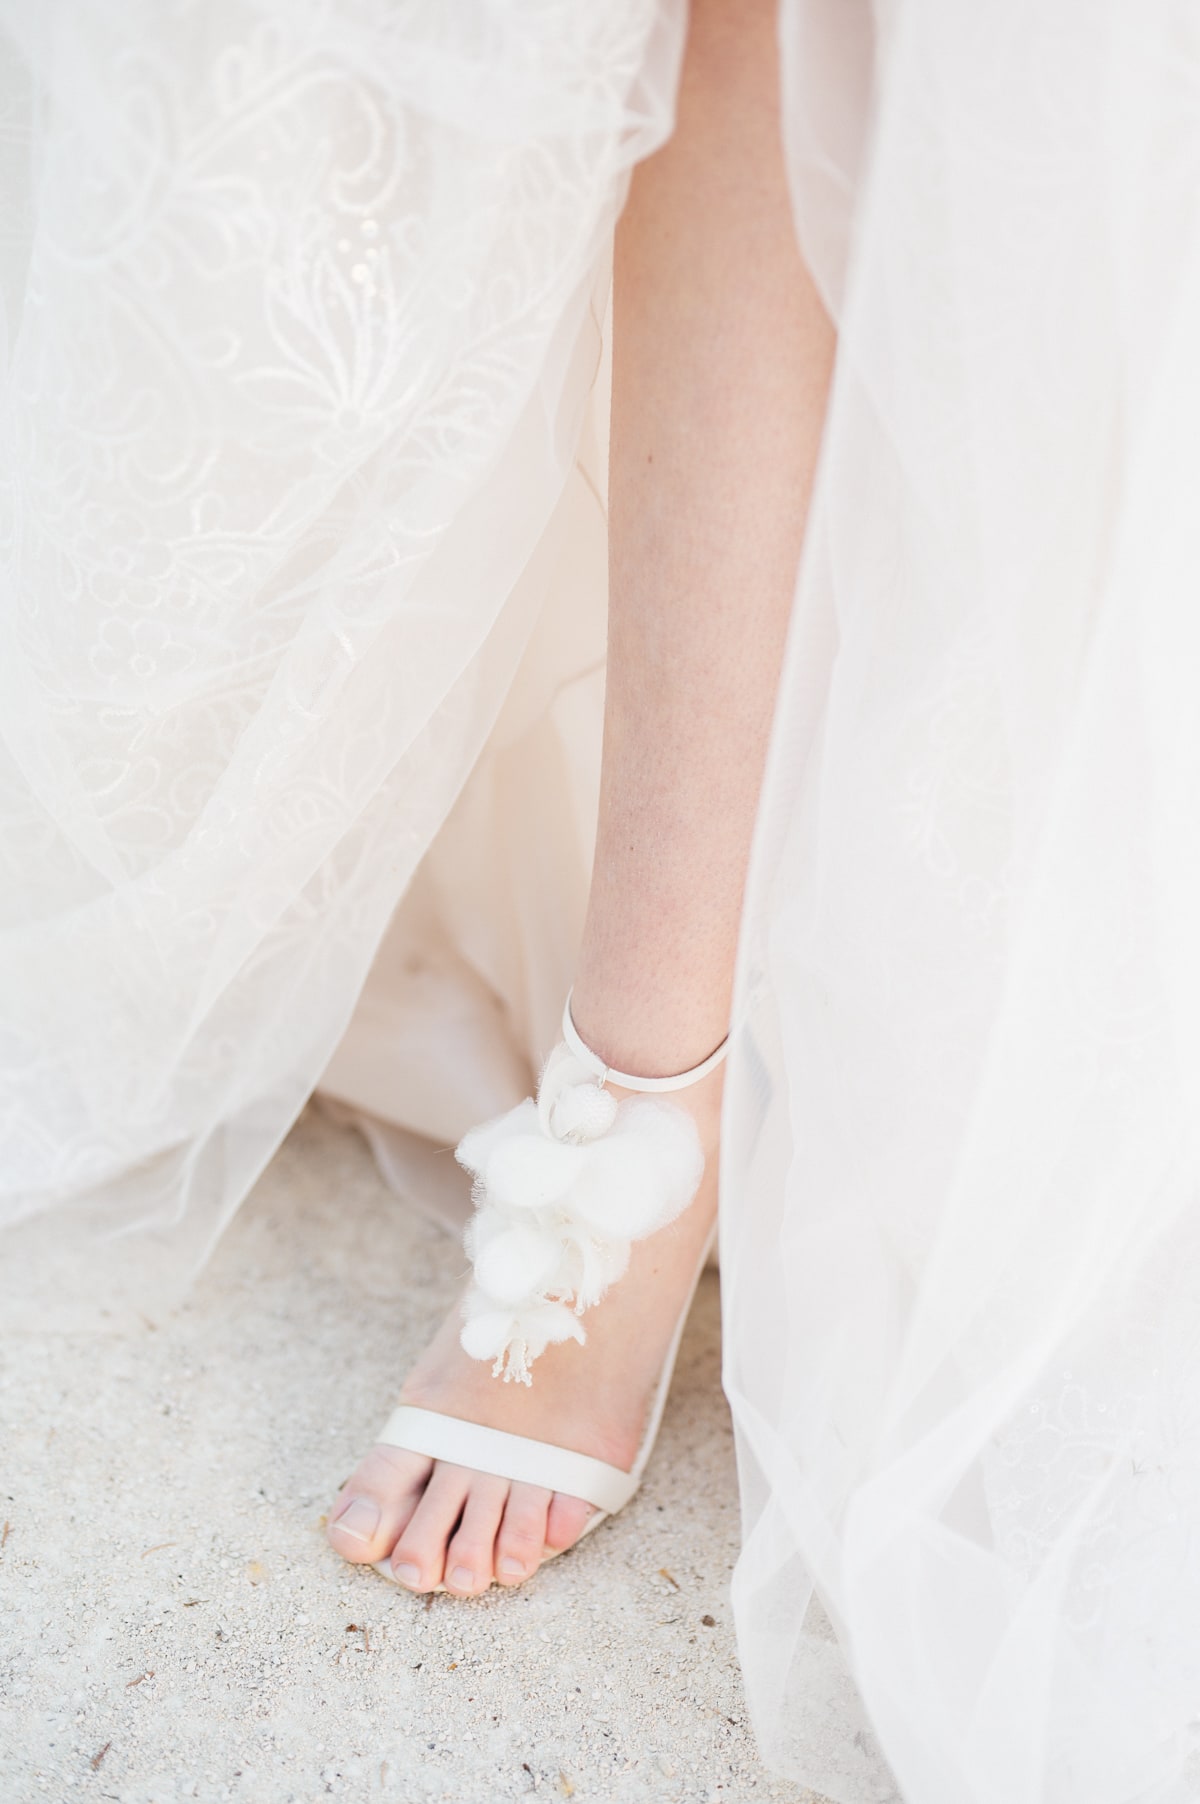 Chaussure de la mariée